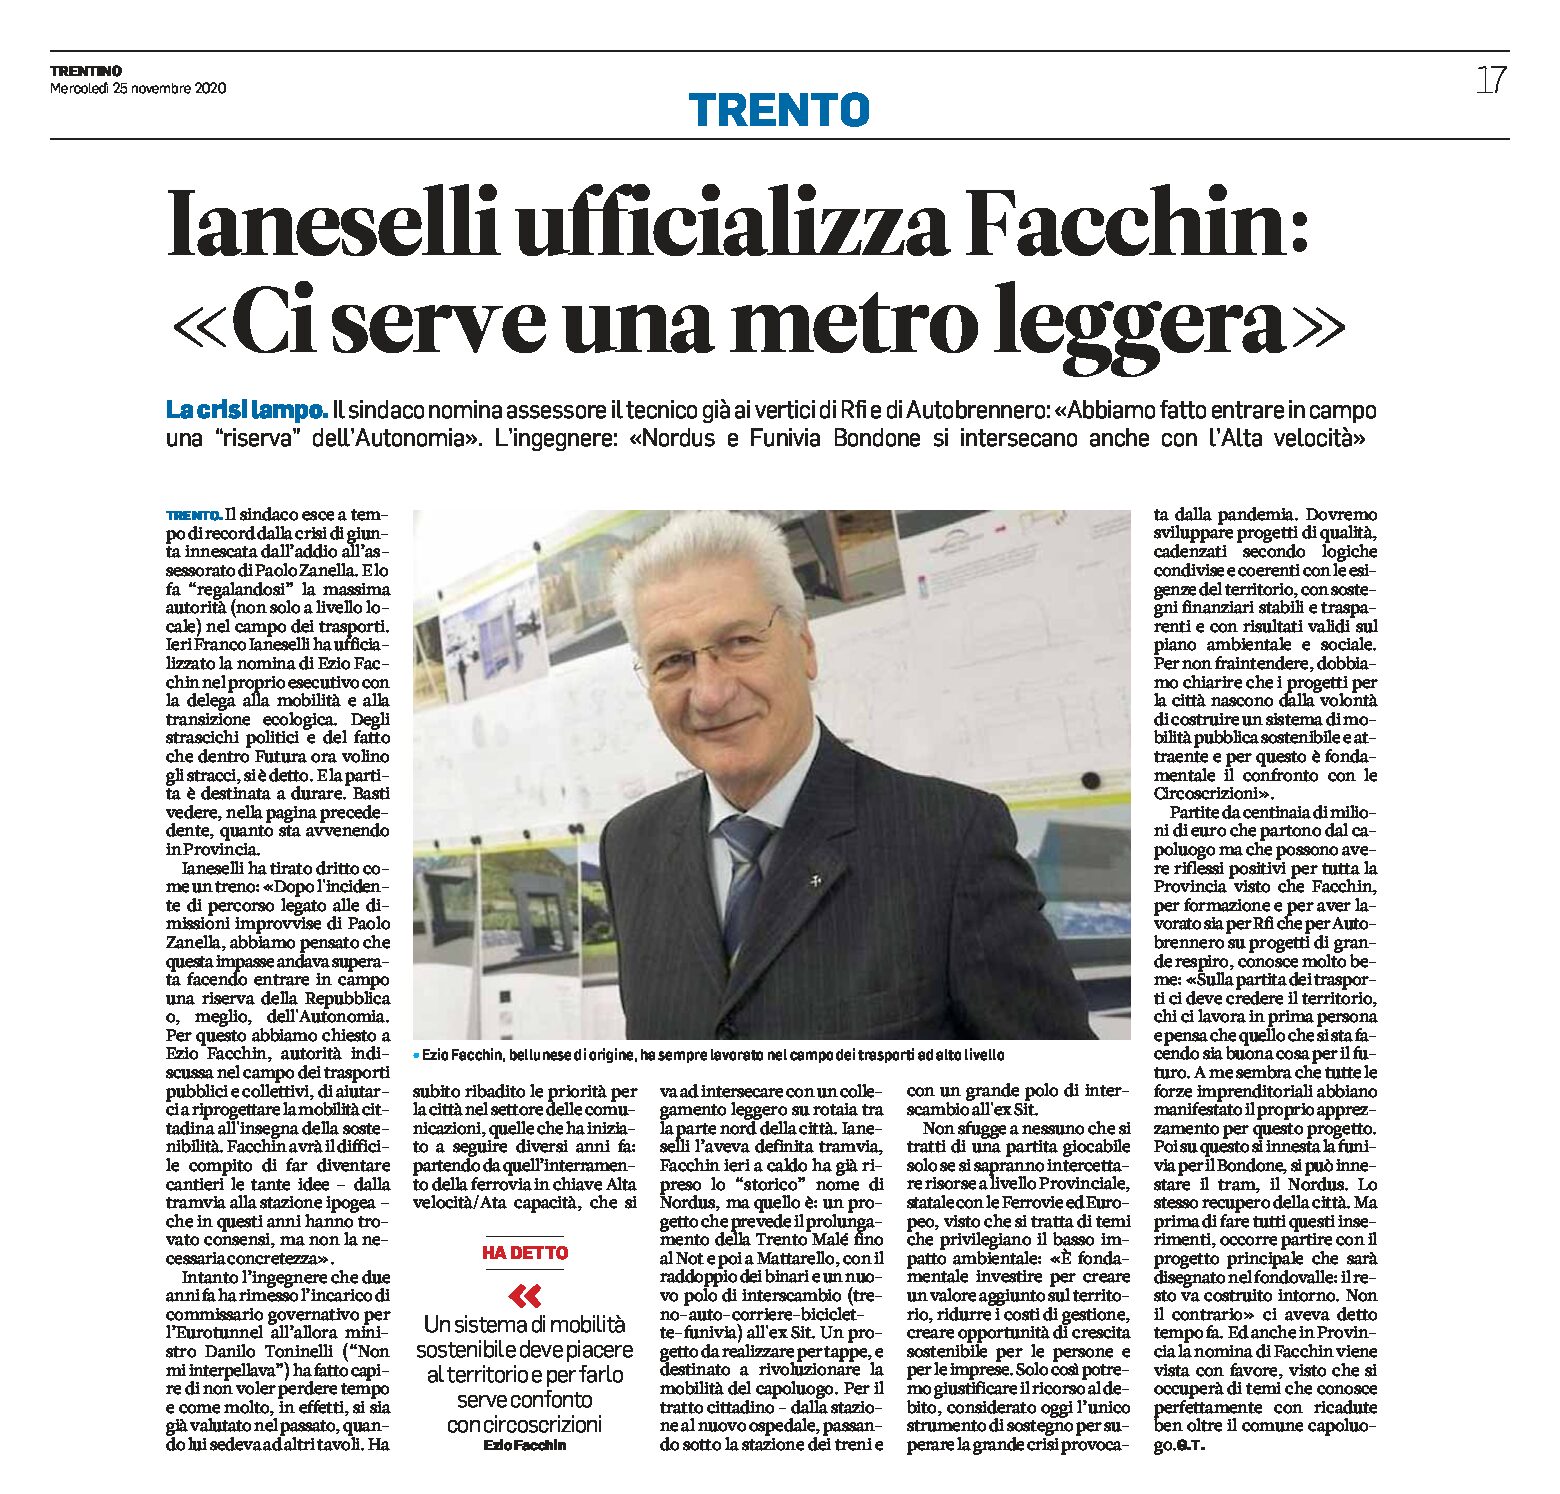 Trento: Ianeselli ufficializza Facchin “ci serve una metro leggera”